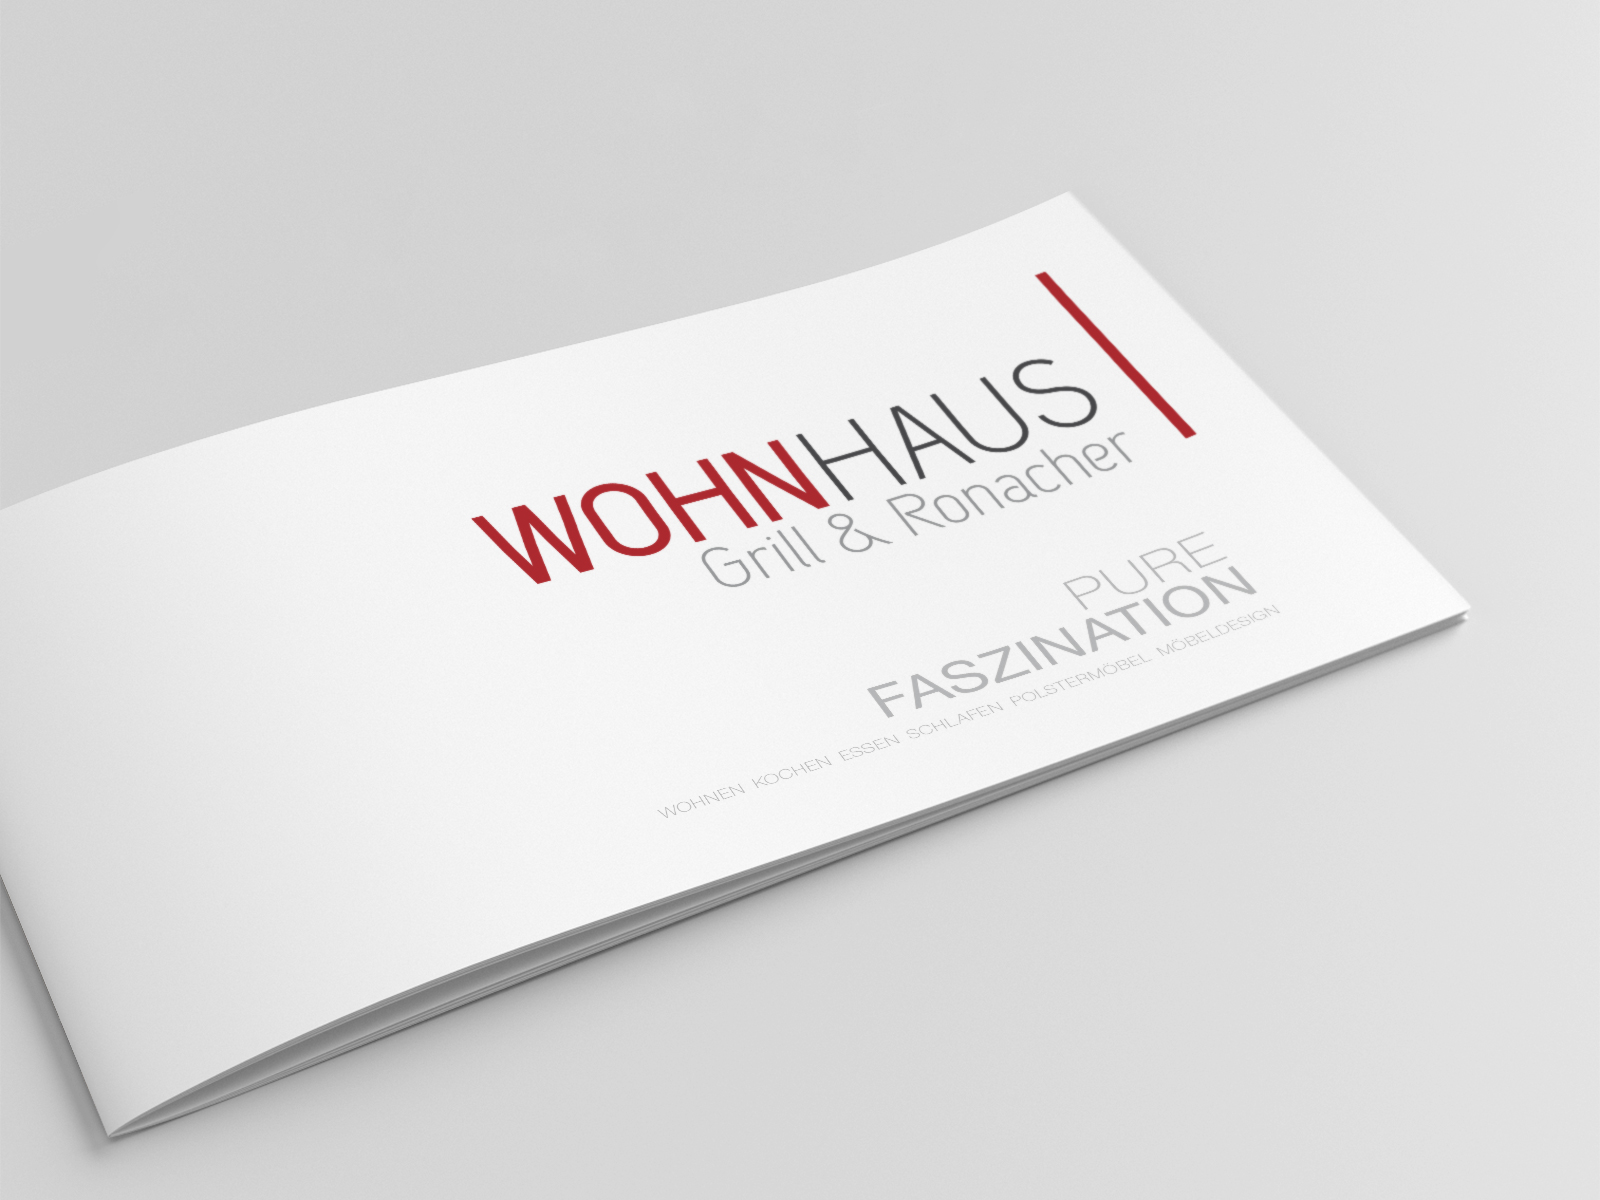 WOHNHAUS Grill & Ronacher Image-Broschüre Titel